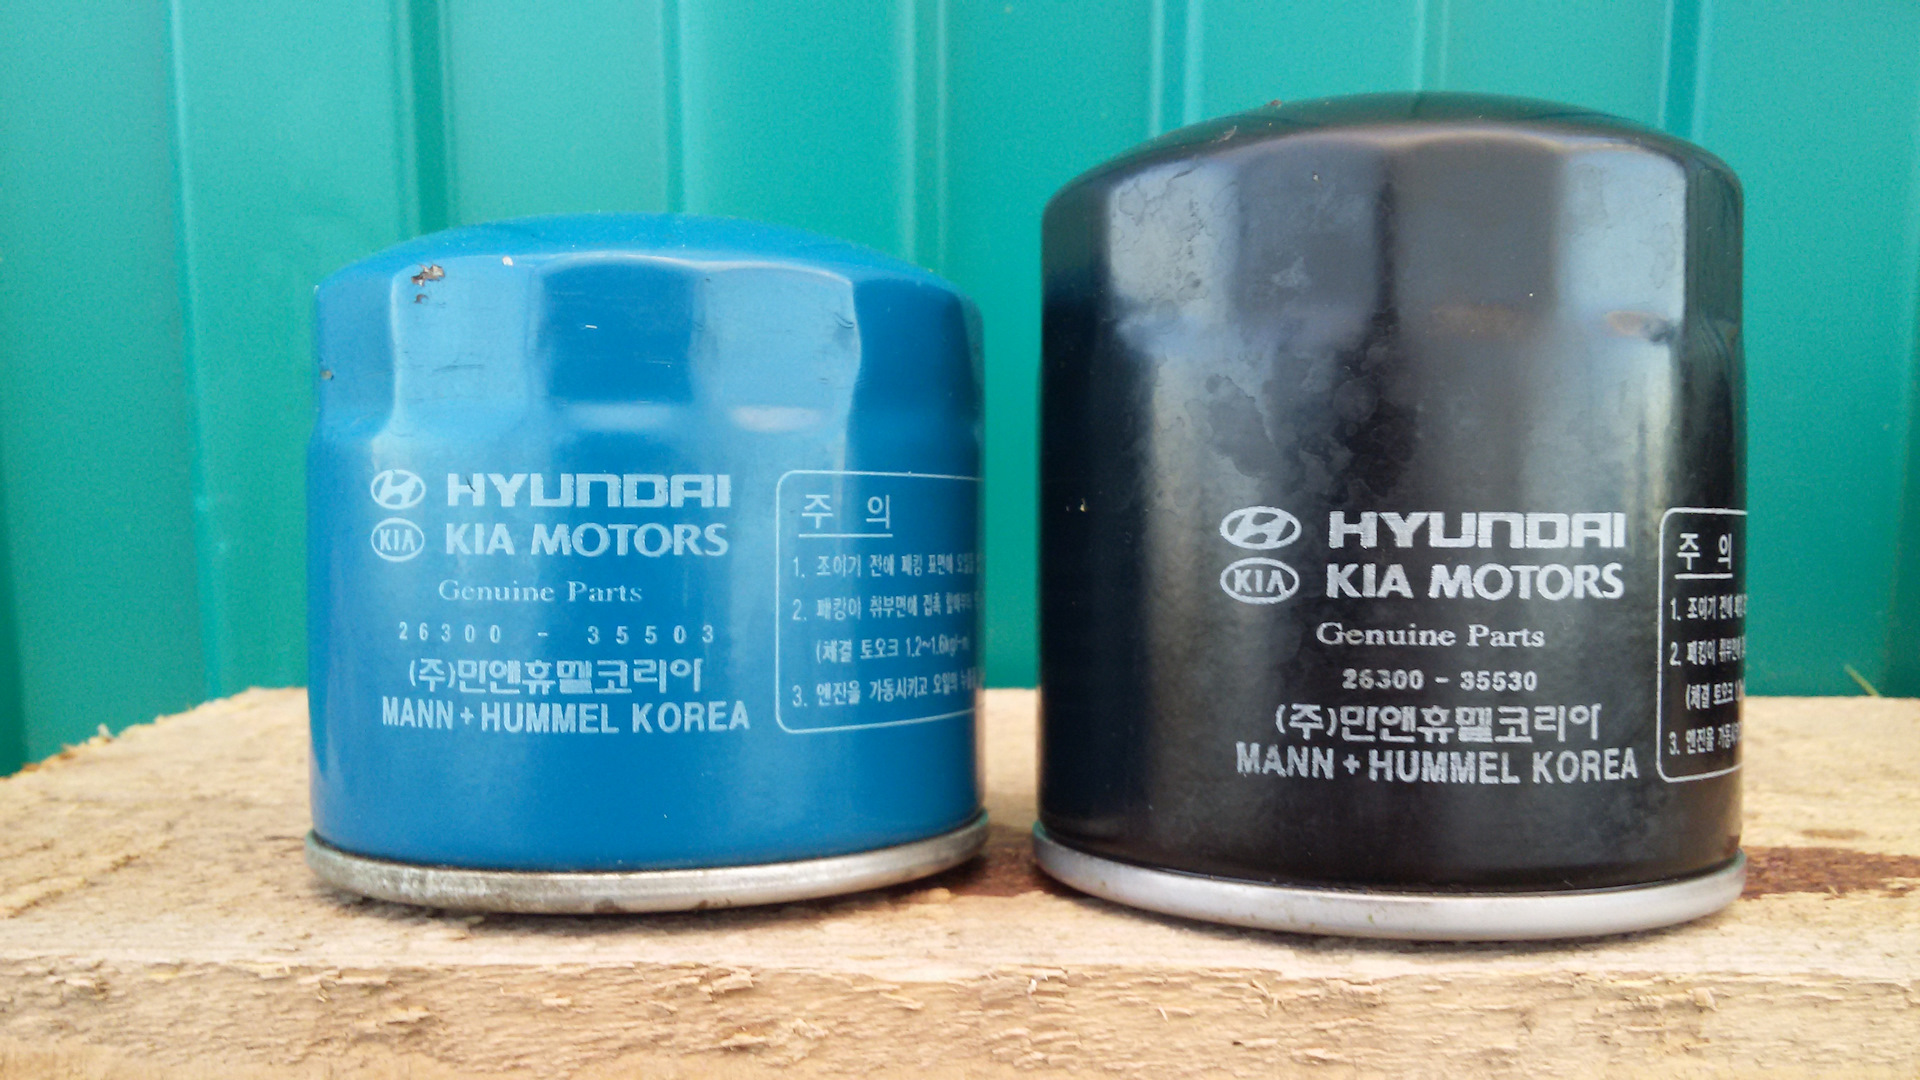 Фильтр масла рио. Фильтр масляный оригинал Hyundai 2630035530. Hyundai/Kia 26300-35530. Масляный фильтр на Kia Rio 2013 1.6. Фильтр масляный Манн Киа Рио 3 1.4.